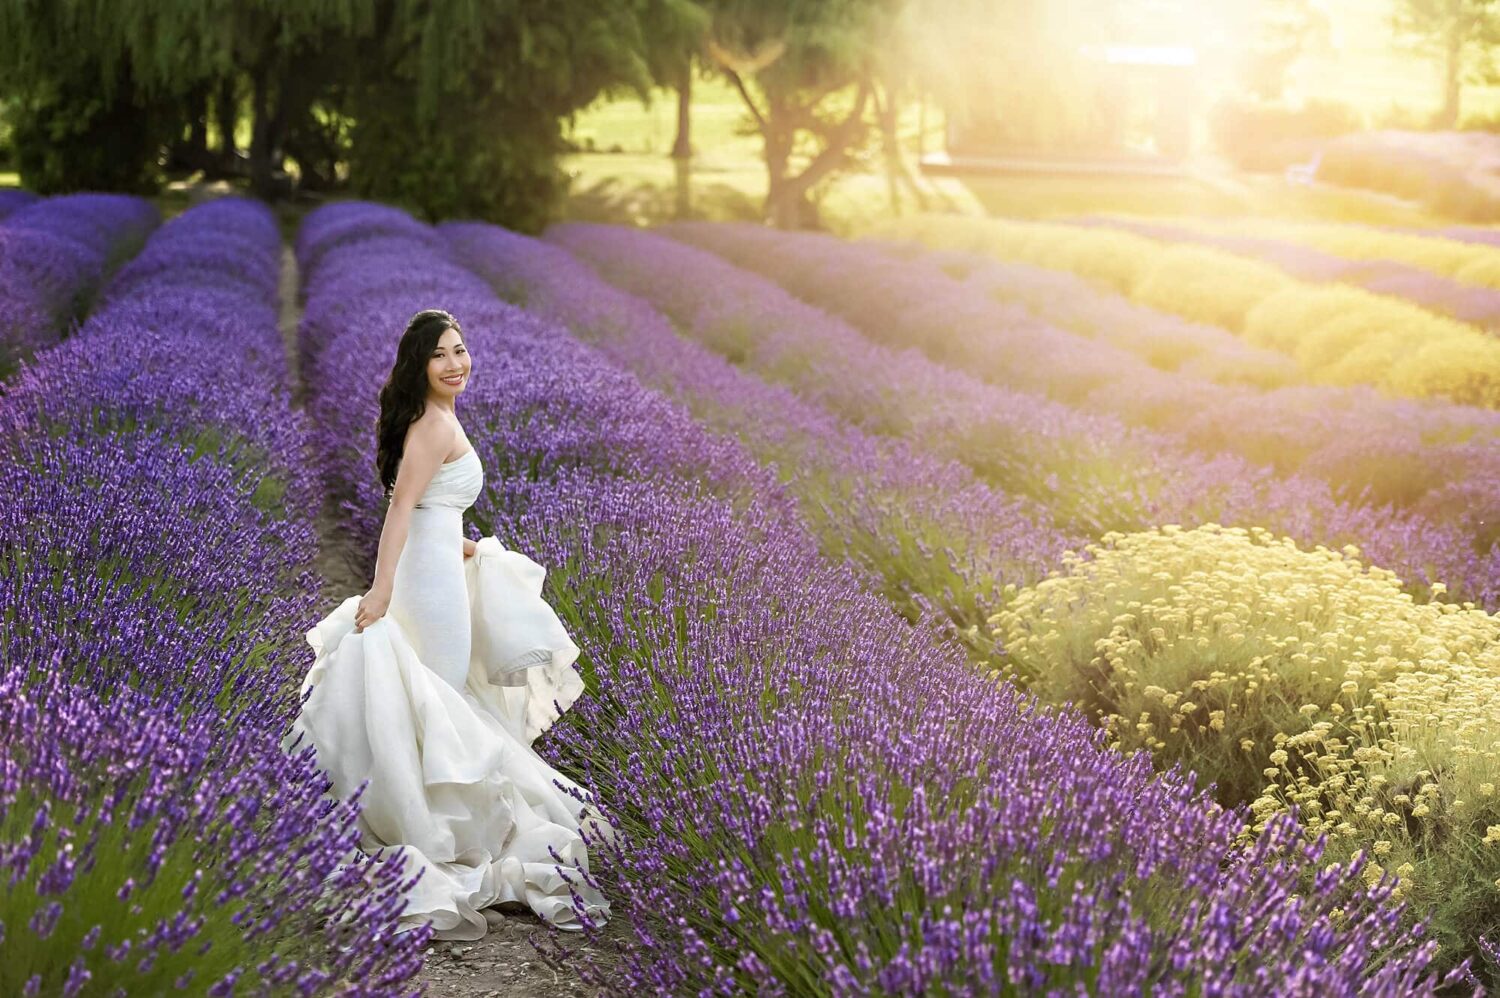 Lavender Farm Beauty Portraits Eden Bao